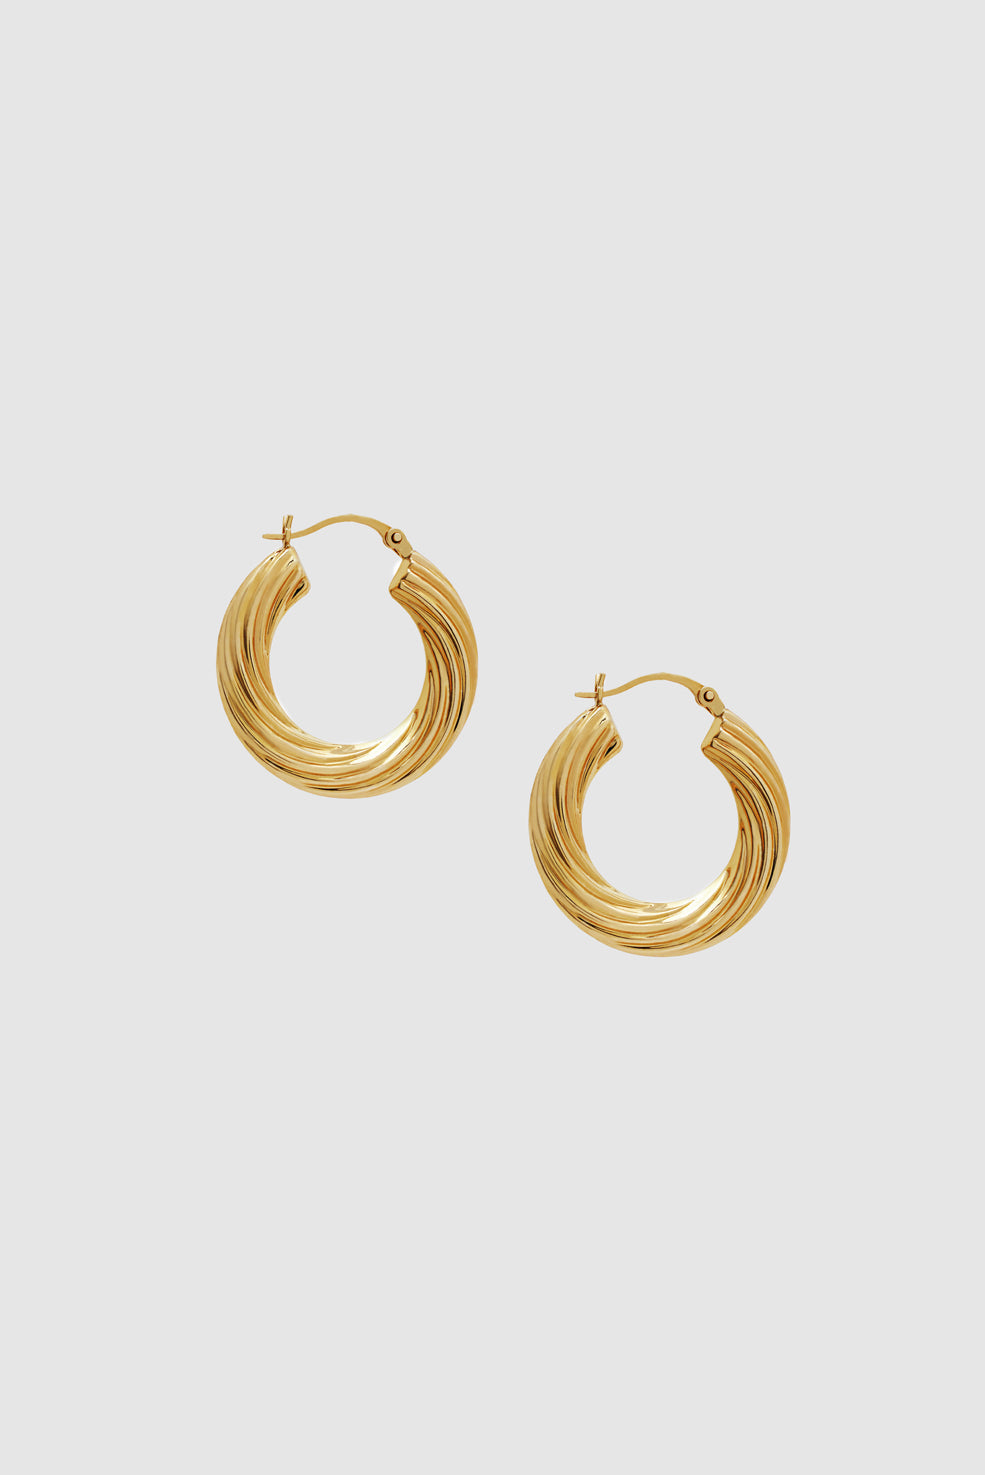 ANINE BING Twist Hoop Earrings - 14K Gold - Front View